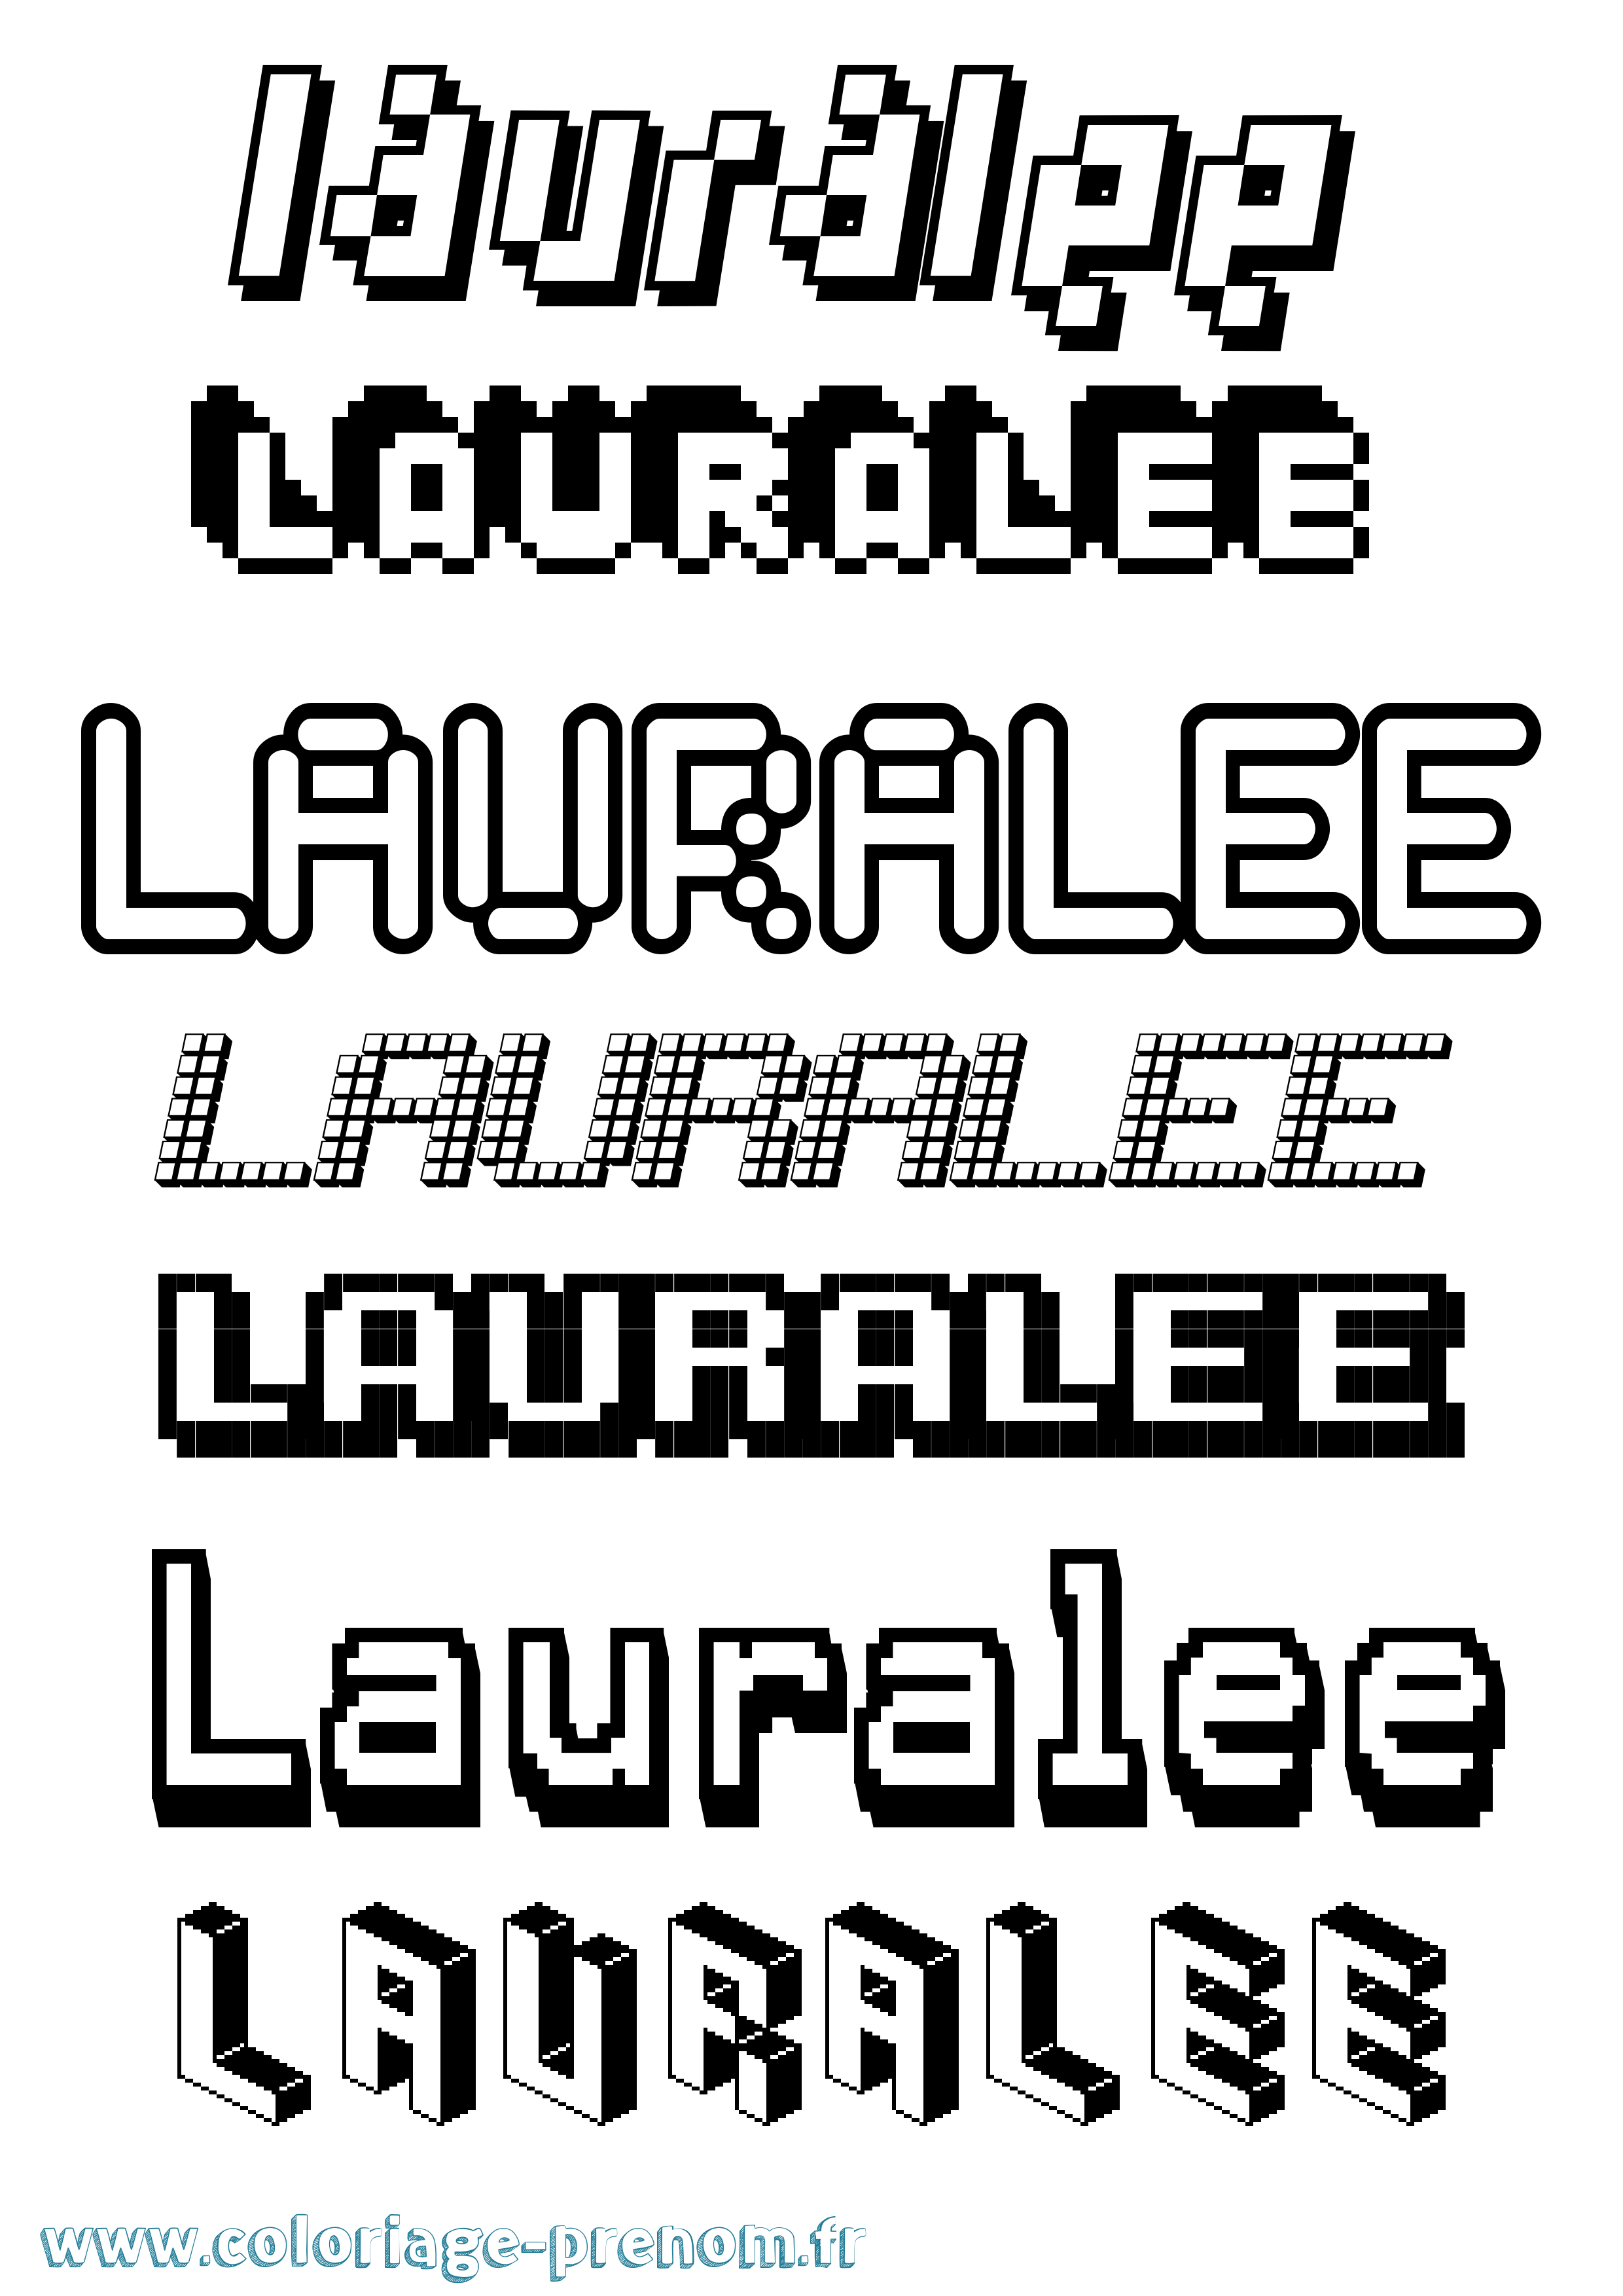 Coloriage prénom Lauralee Pixel